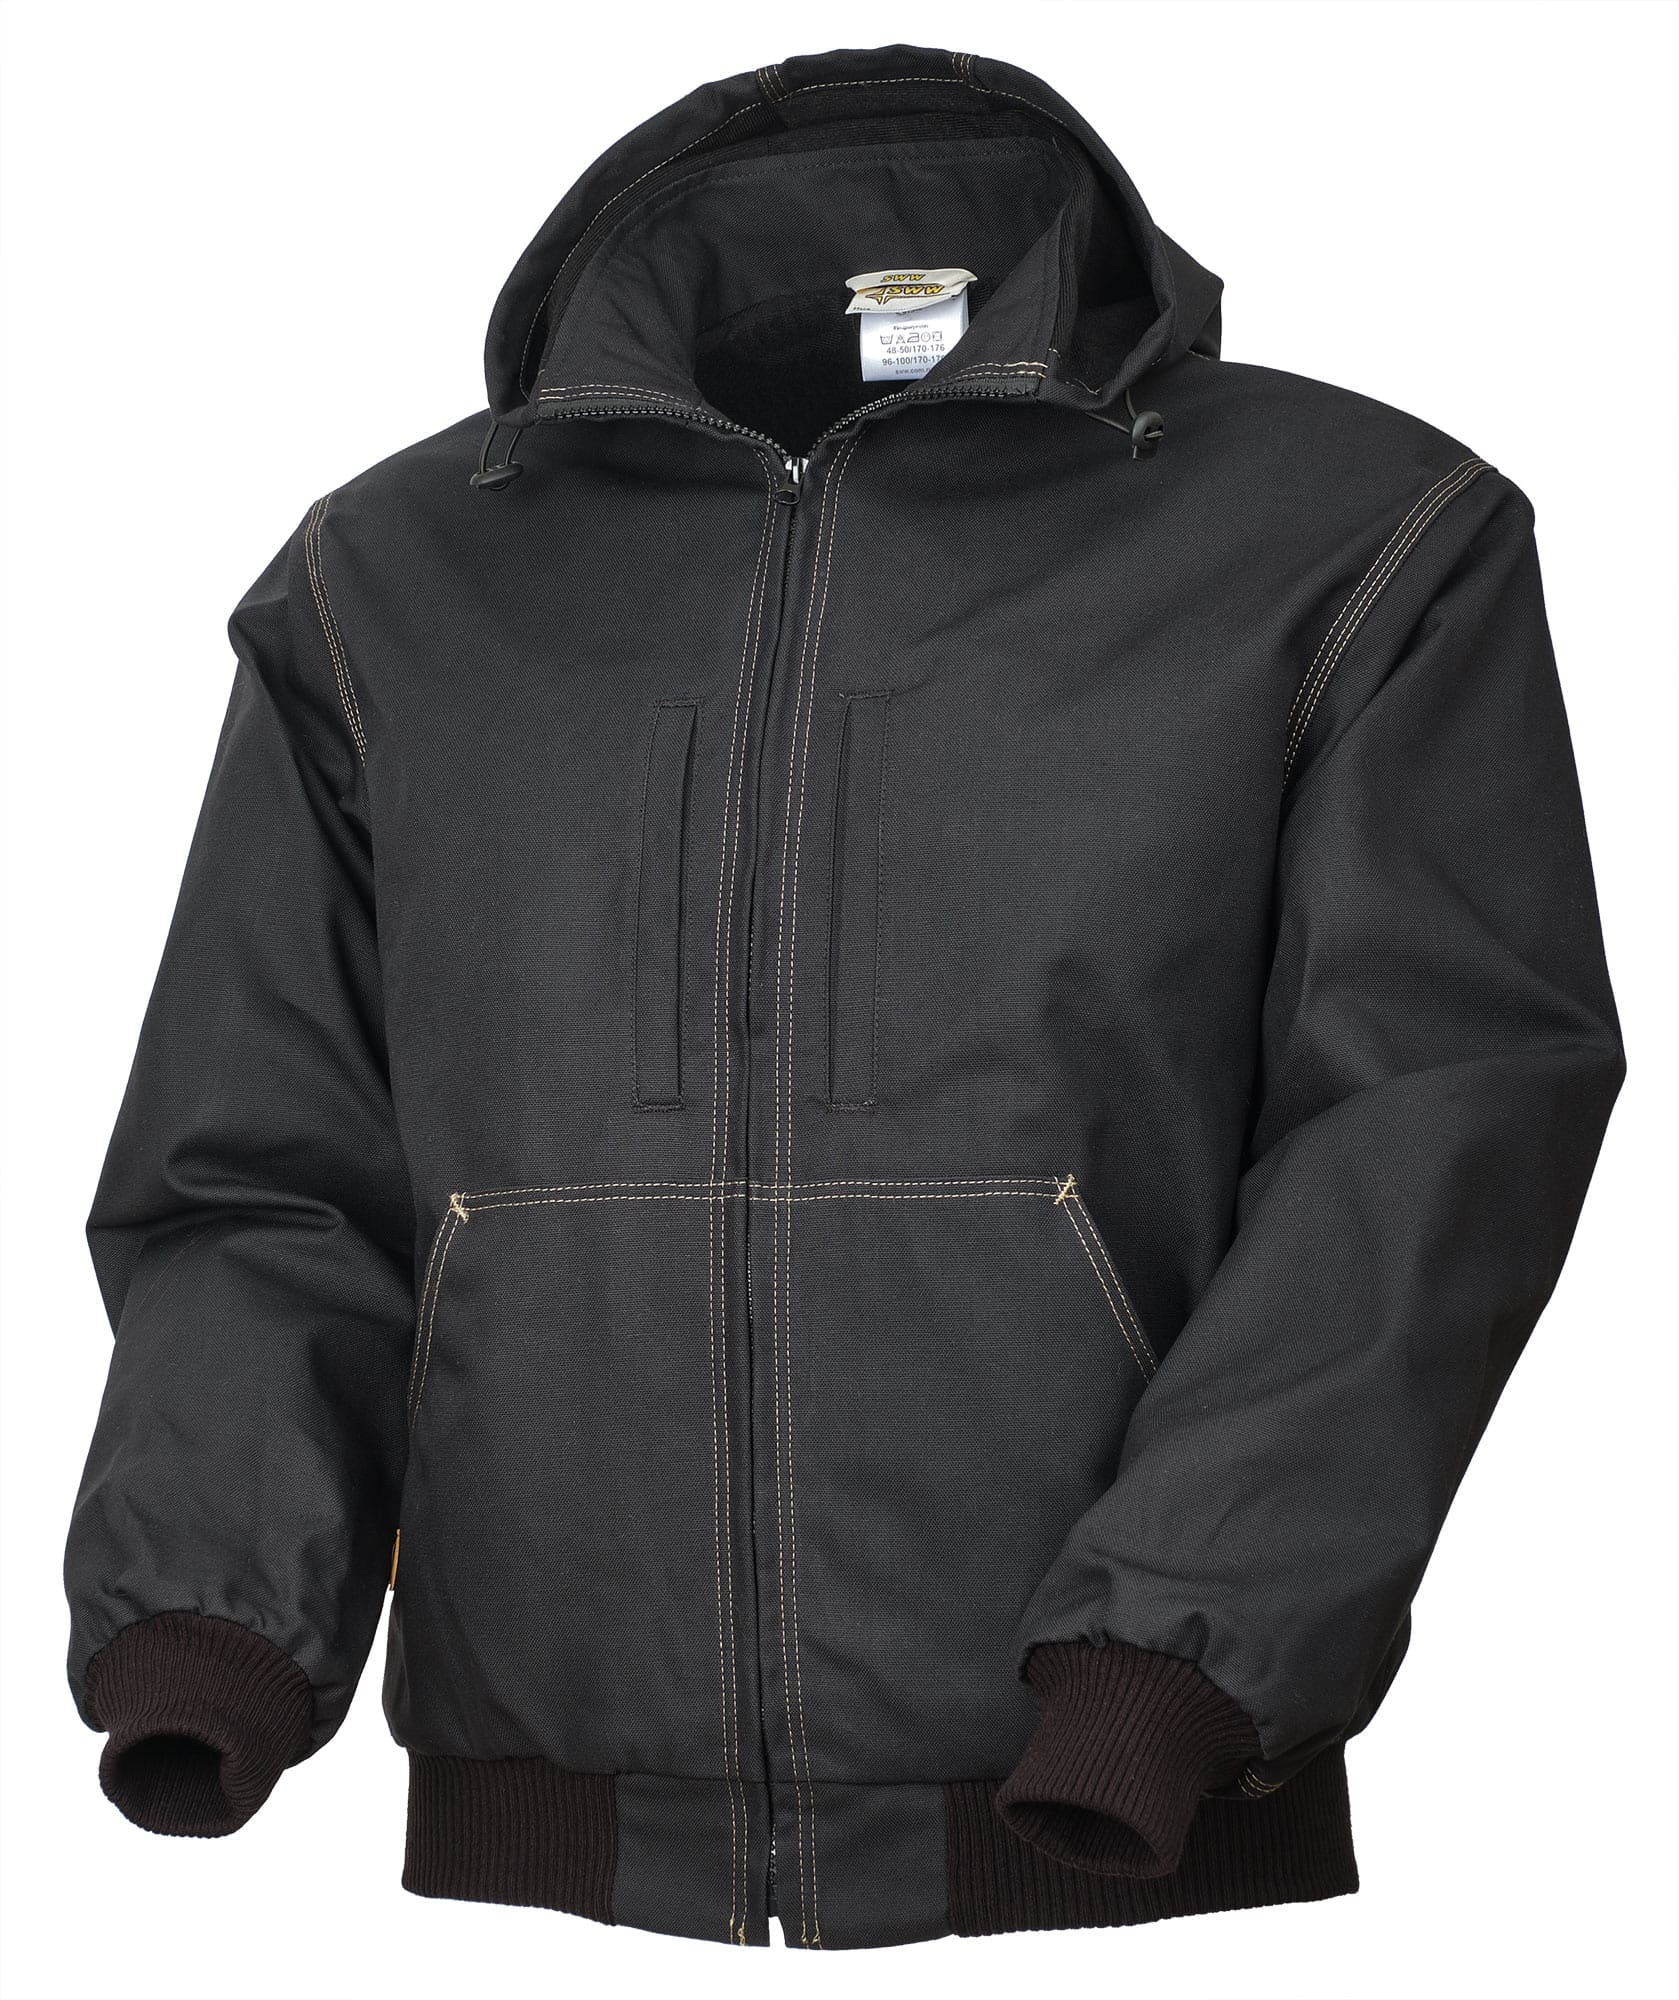 Куртка 475T-CAN-90 SWW купить оптом и в розницу в интернет-магазине tis-tex.ru — 1